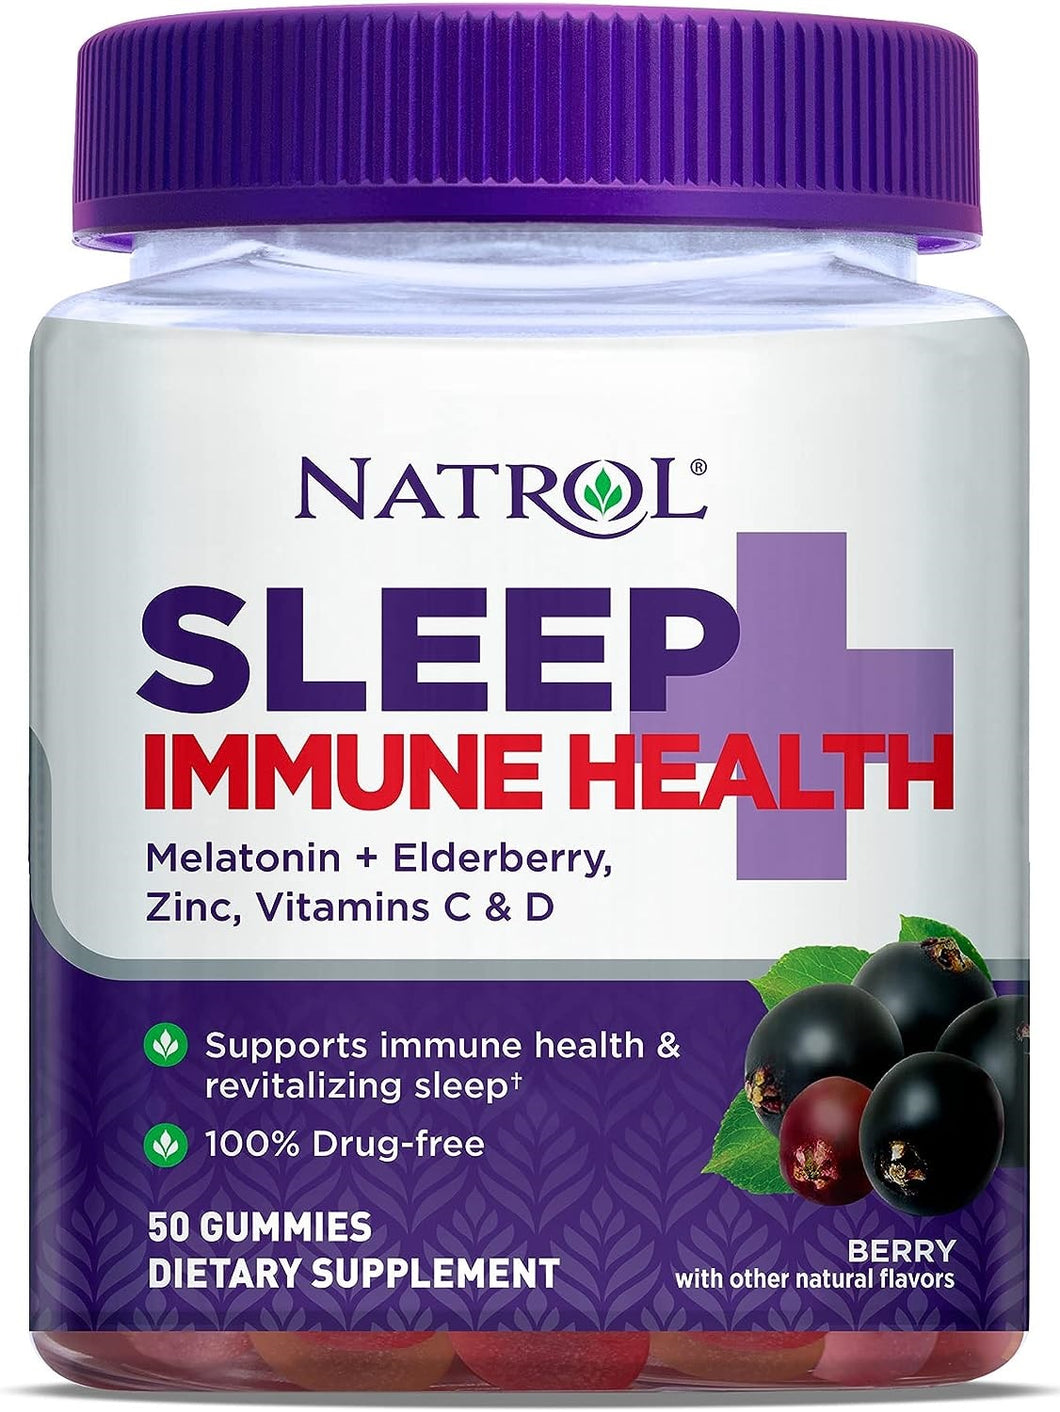 Sleep + Immune Adulto, Natrol, mejora el sueño y aumenta tus defensas, 50 gomitas